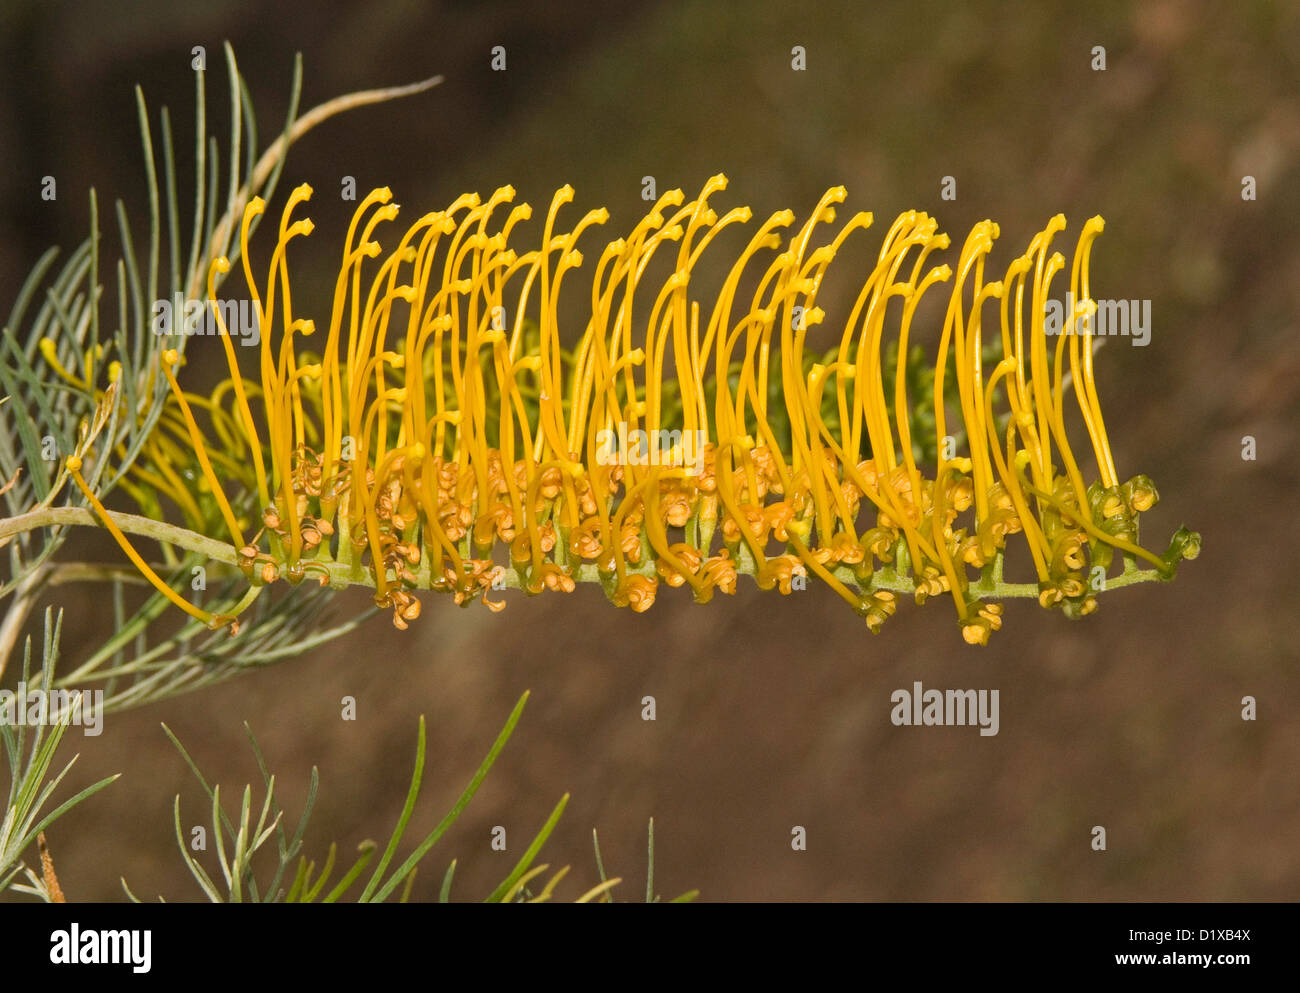 Goldene gelbe Blume Grevillea Sorte "Goldene Lyra" - eine australische einheimische Pflanze, die eine beliebte Garten Strauch ist Stockfoto